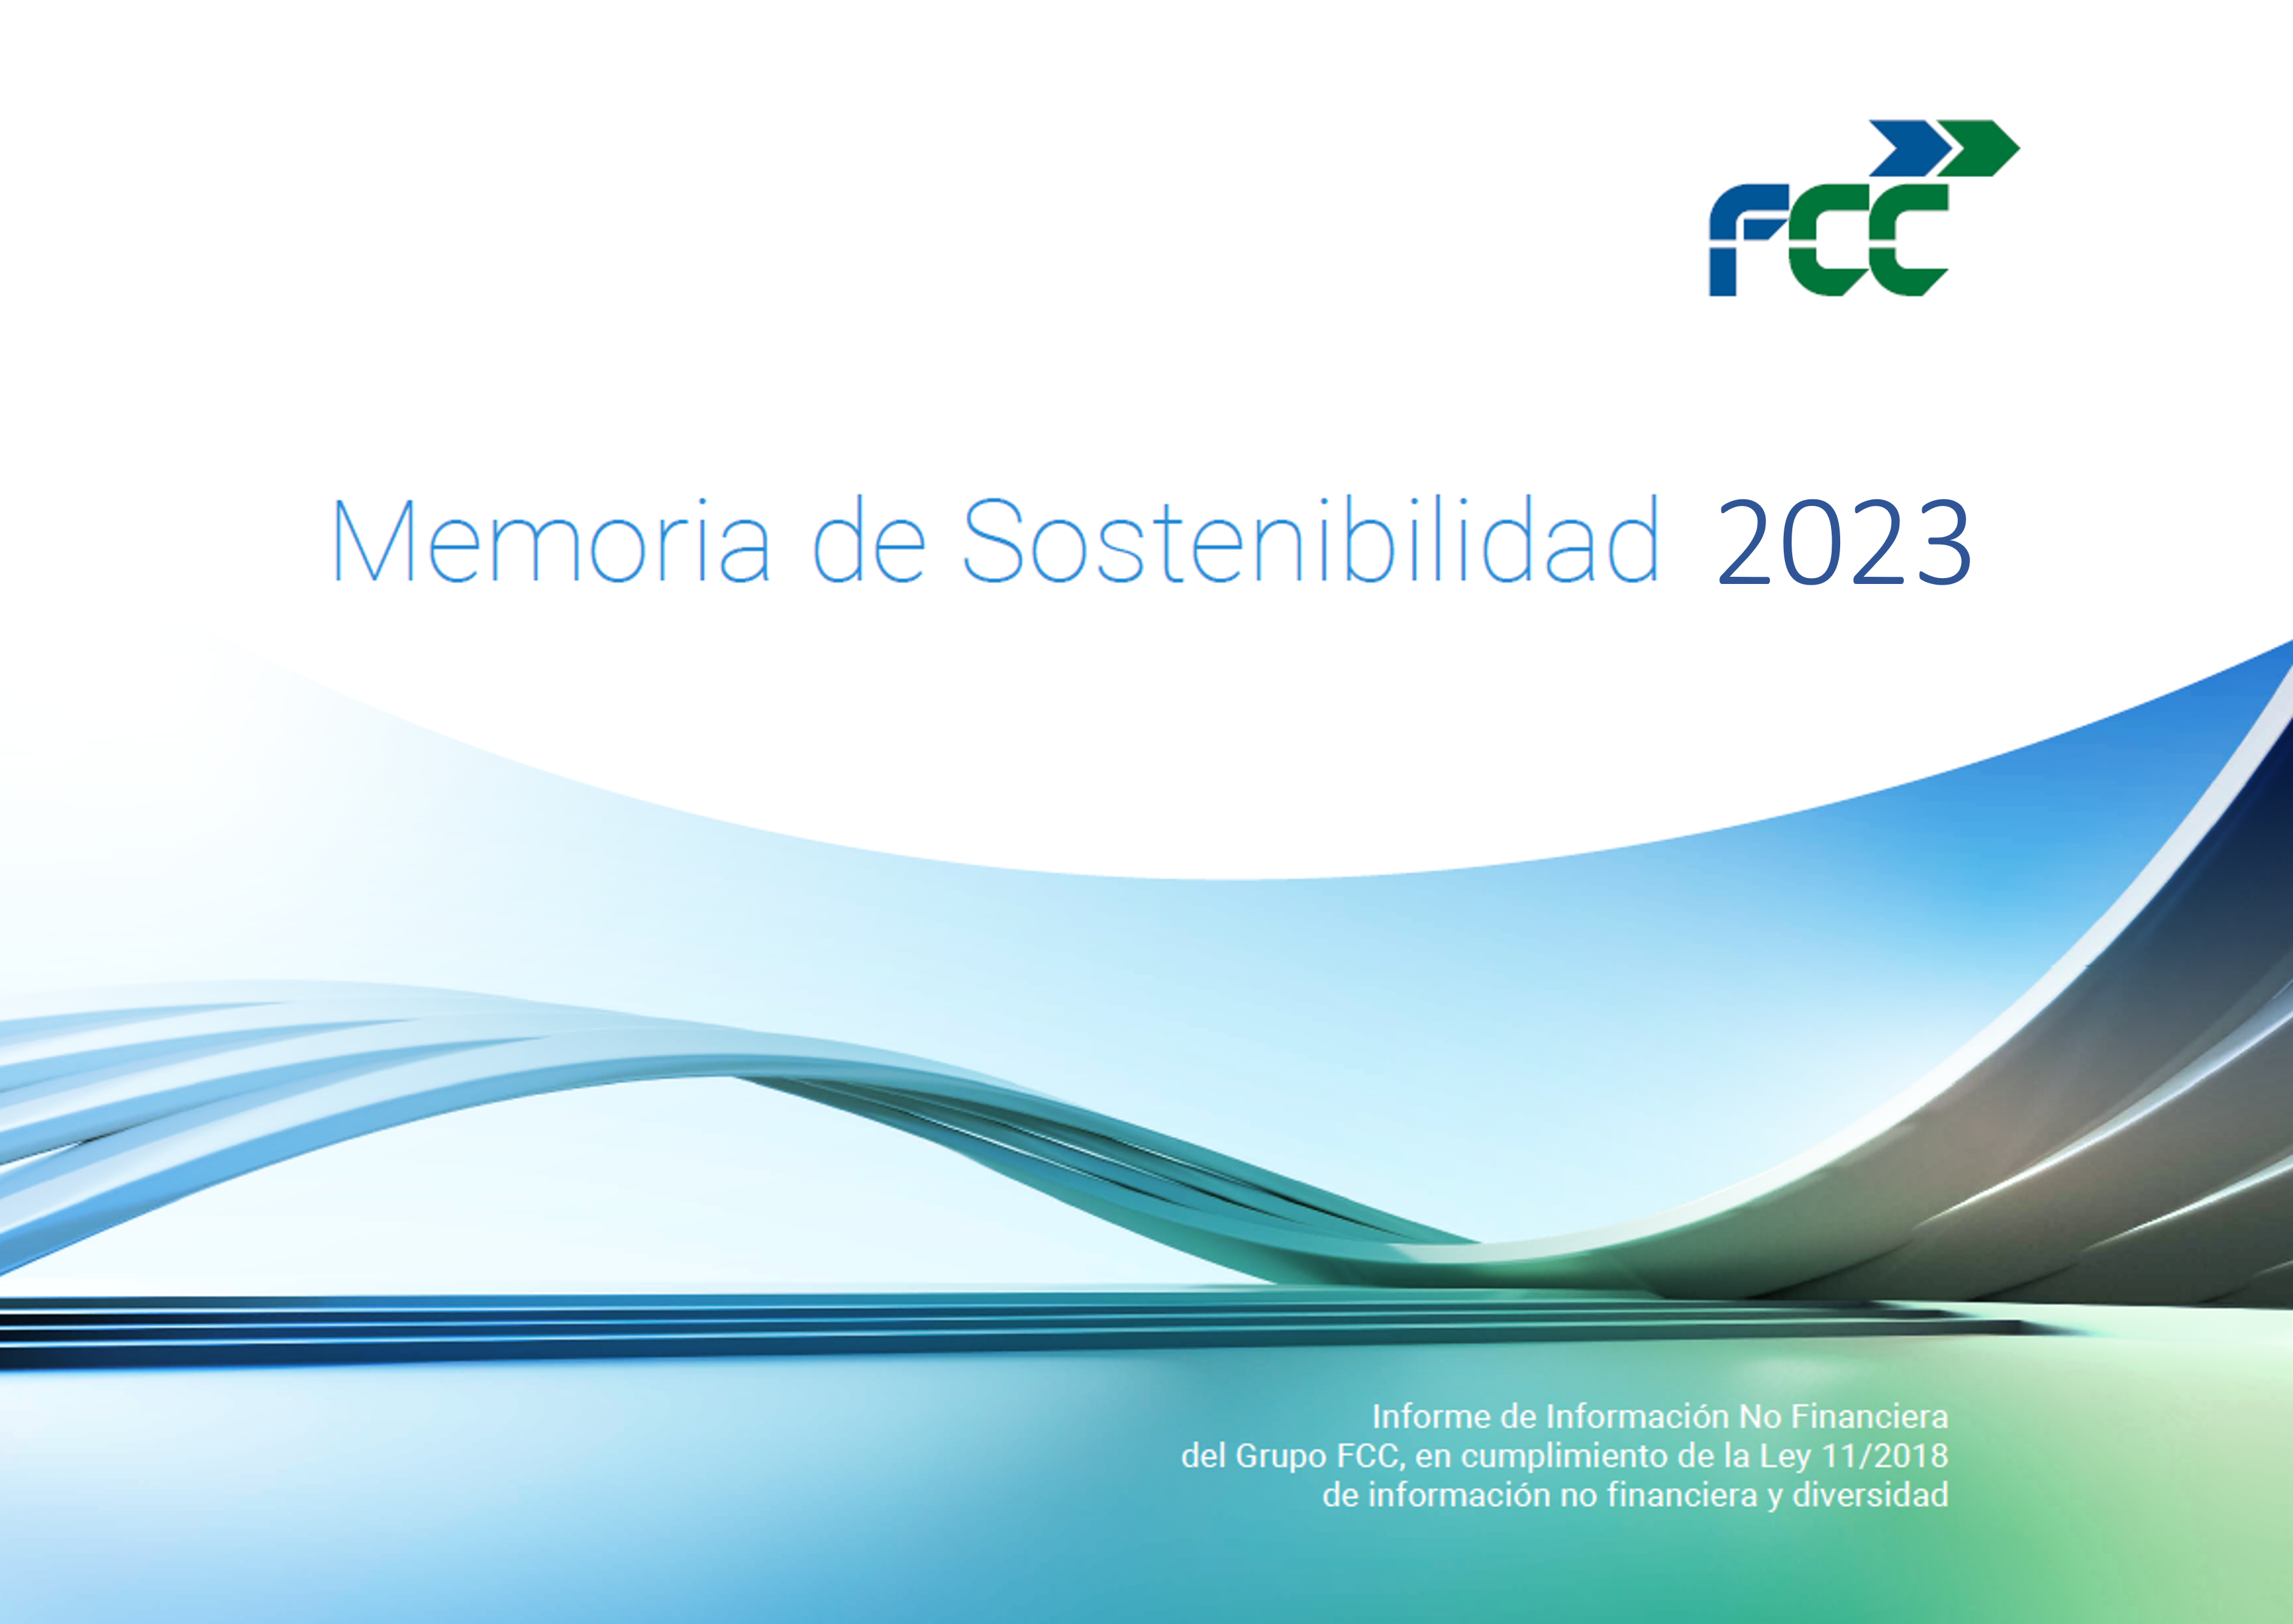 Memoria de Sostenibilidad Grupo FCC 2023